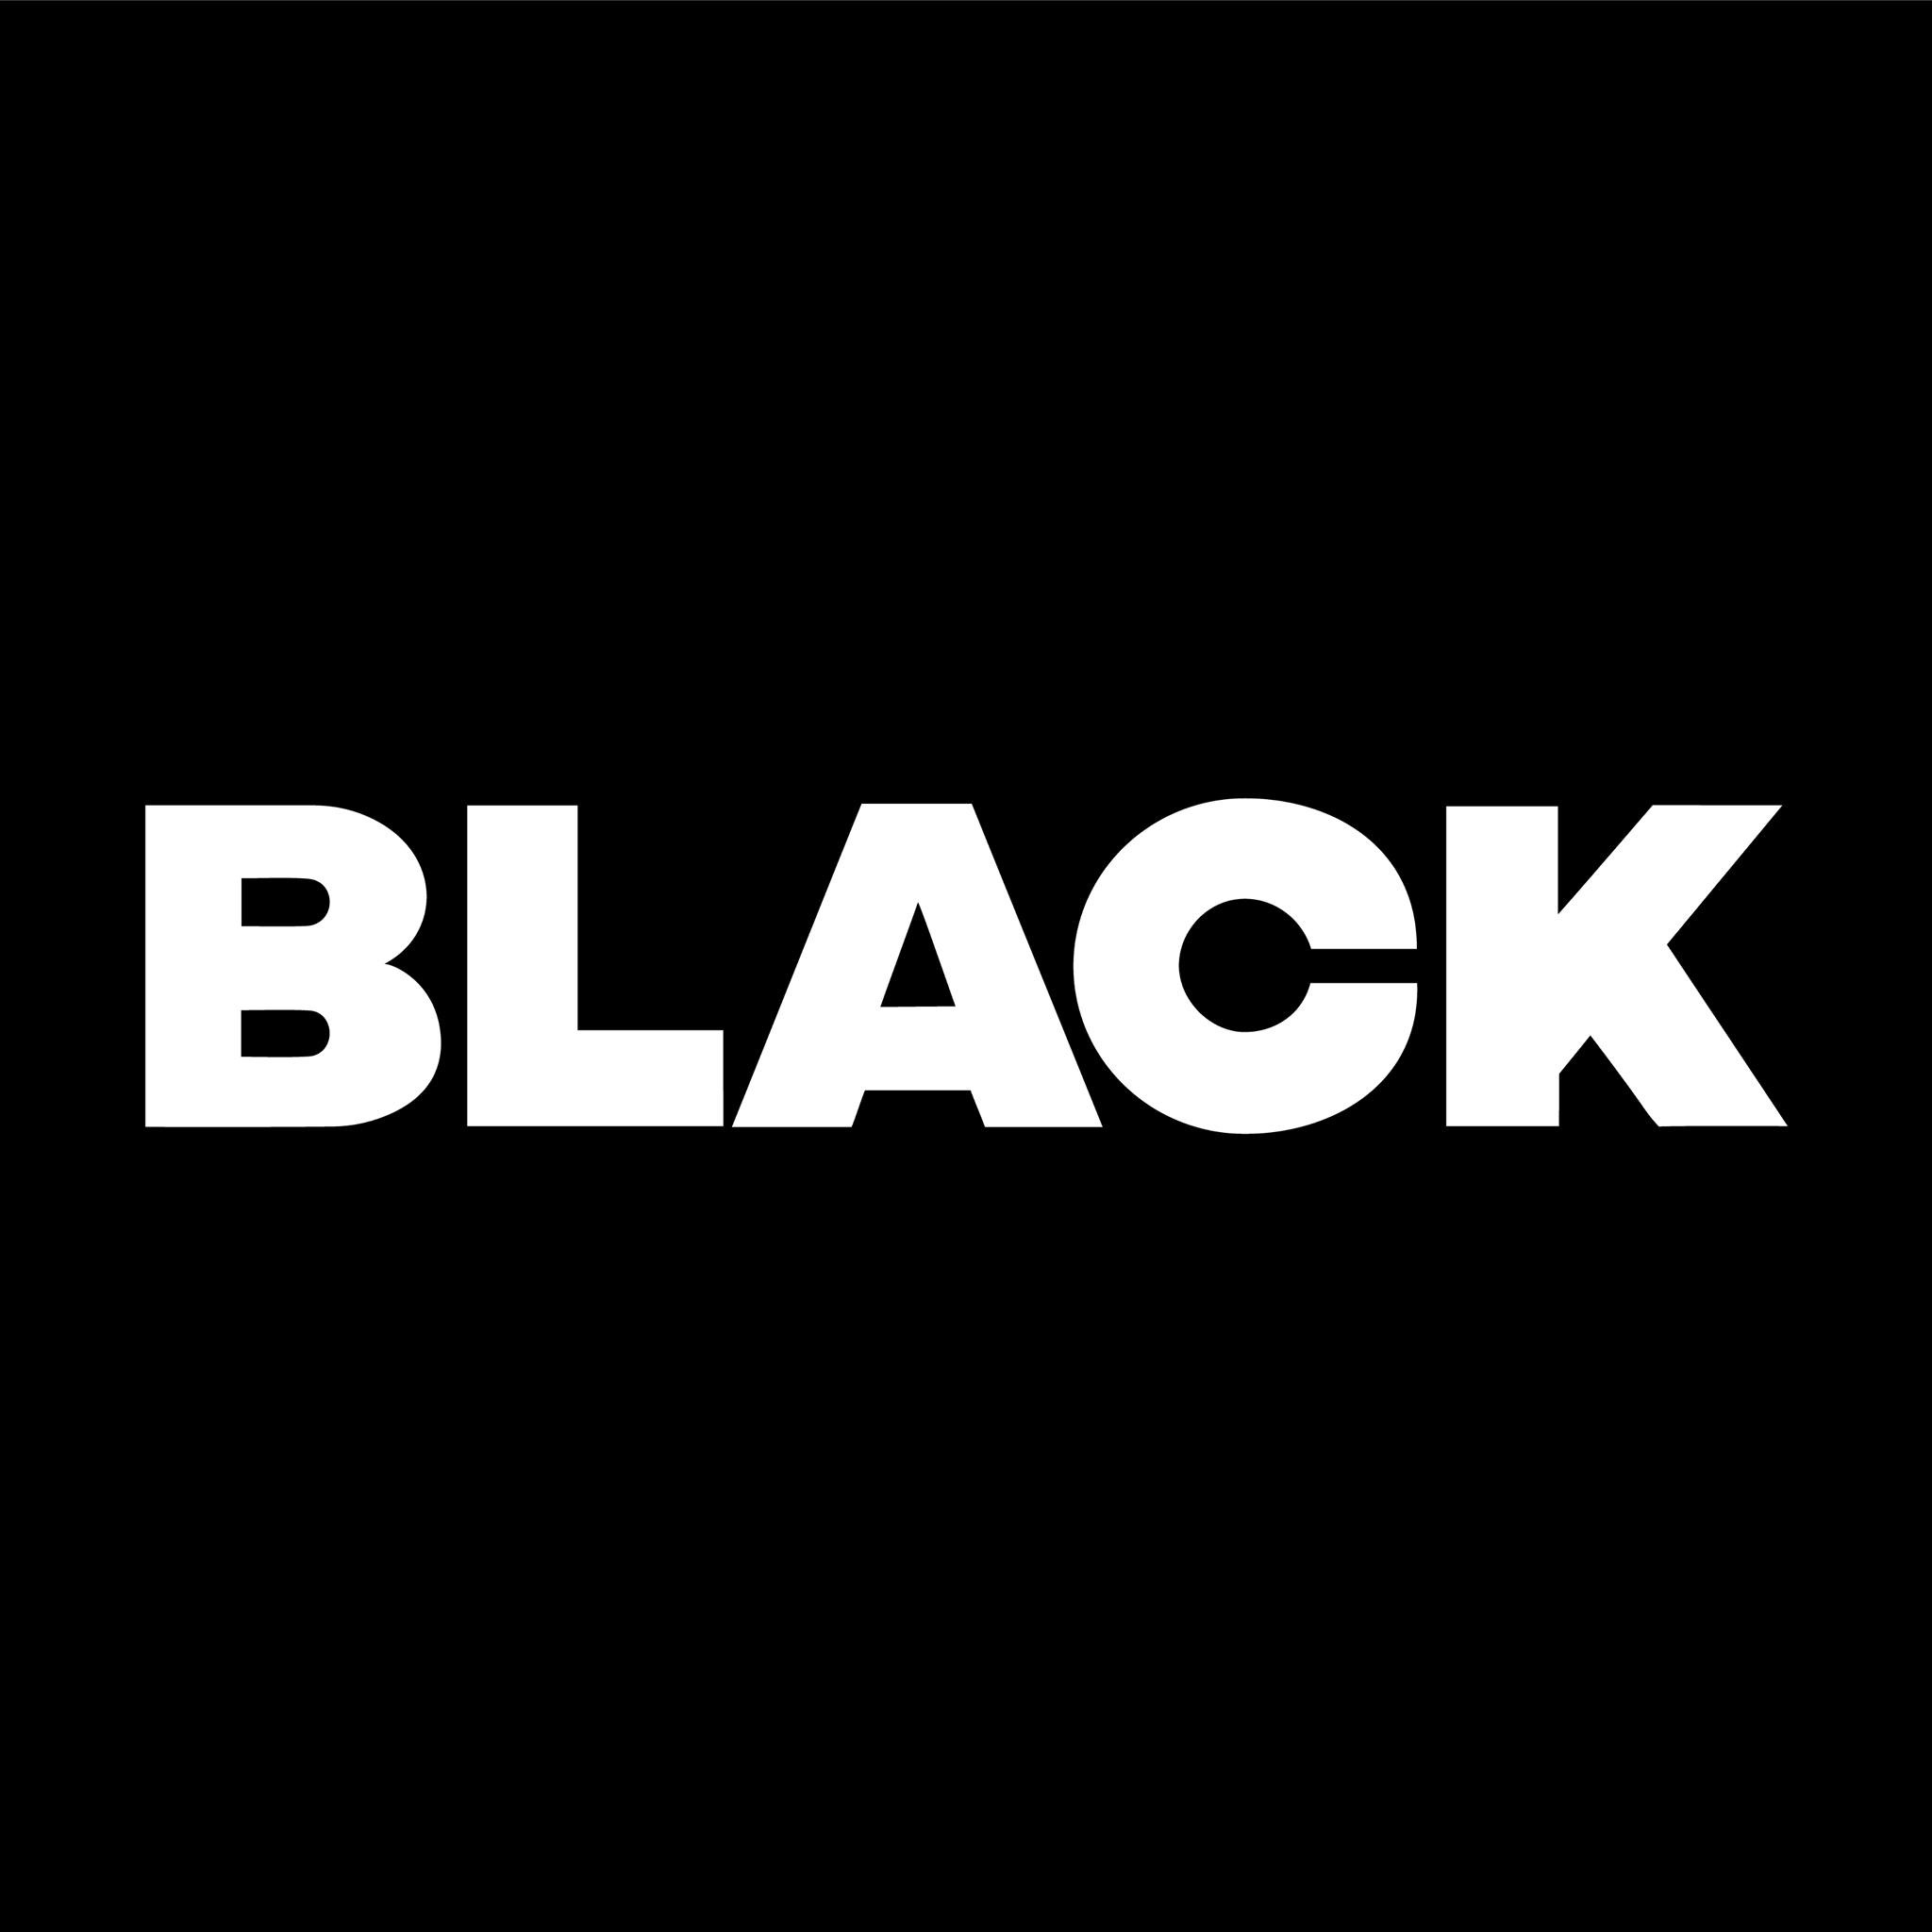 Black Club - Coming Soon in UAE